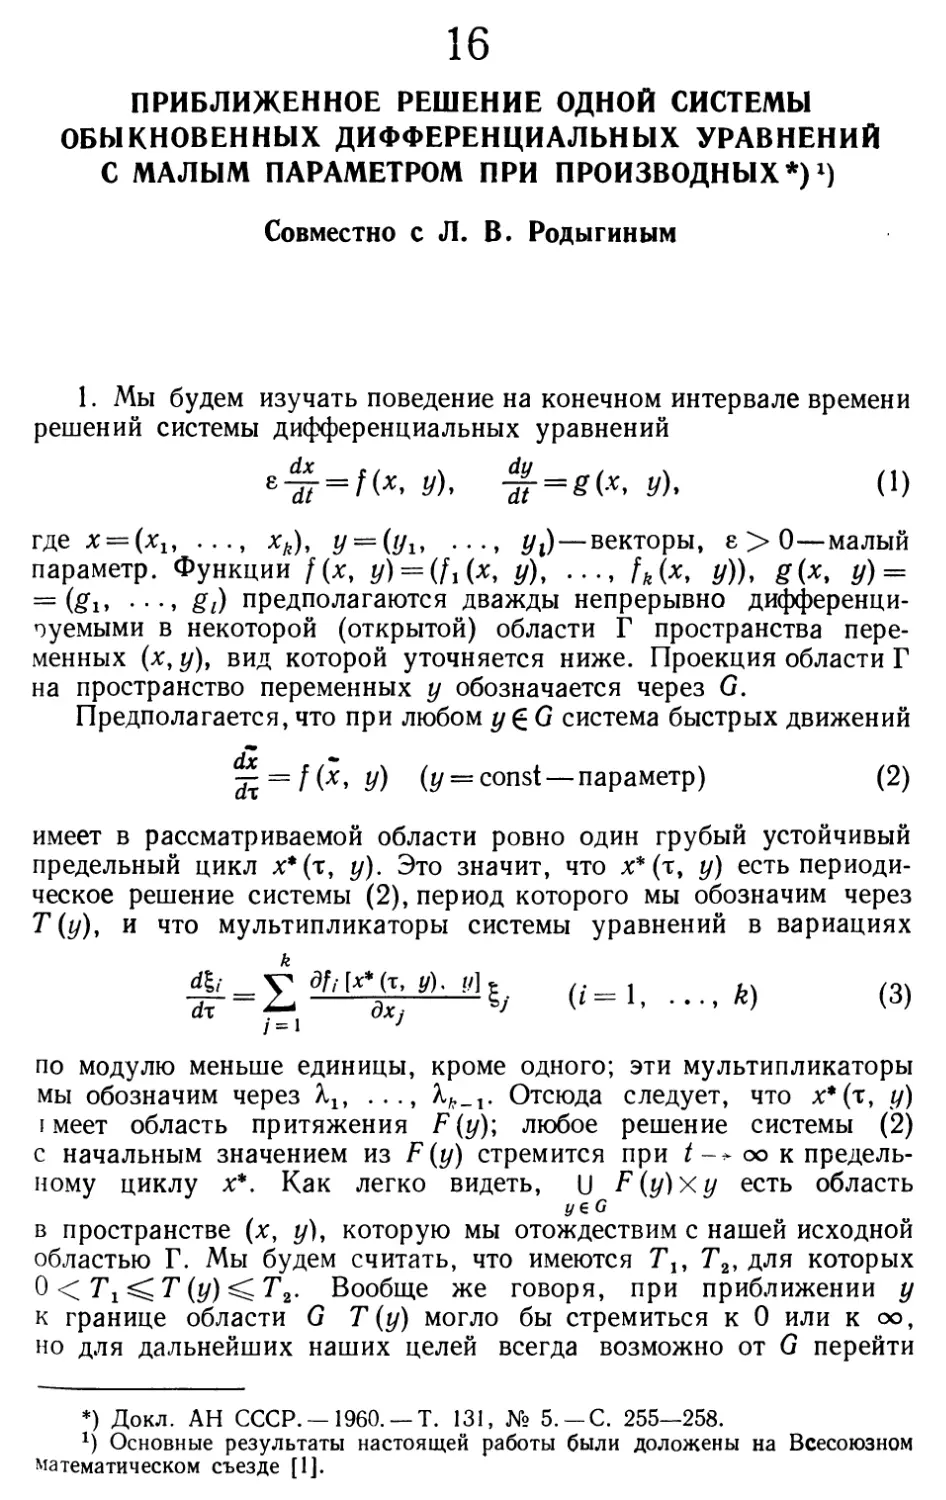 16. Приближенное решение одной системы обыкновенных дифференциальных уравнений с малым параметром при производных